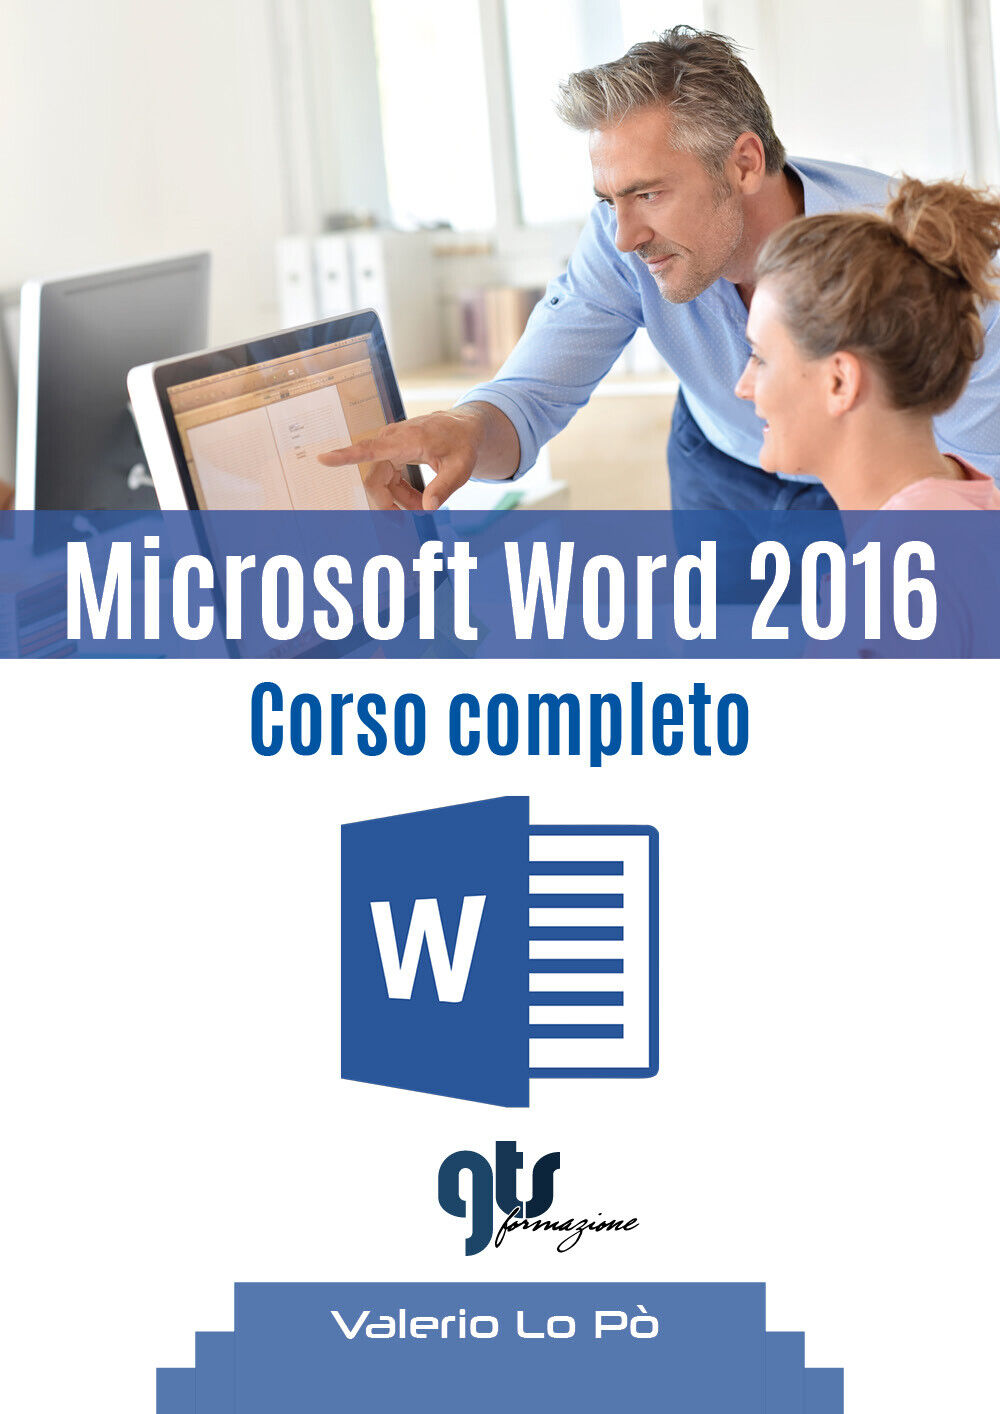 Microsoft Word 2016 - Corso completo  di Valerio Lo P?,  2019,  Youcanprint